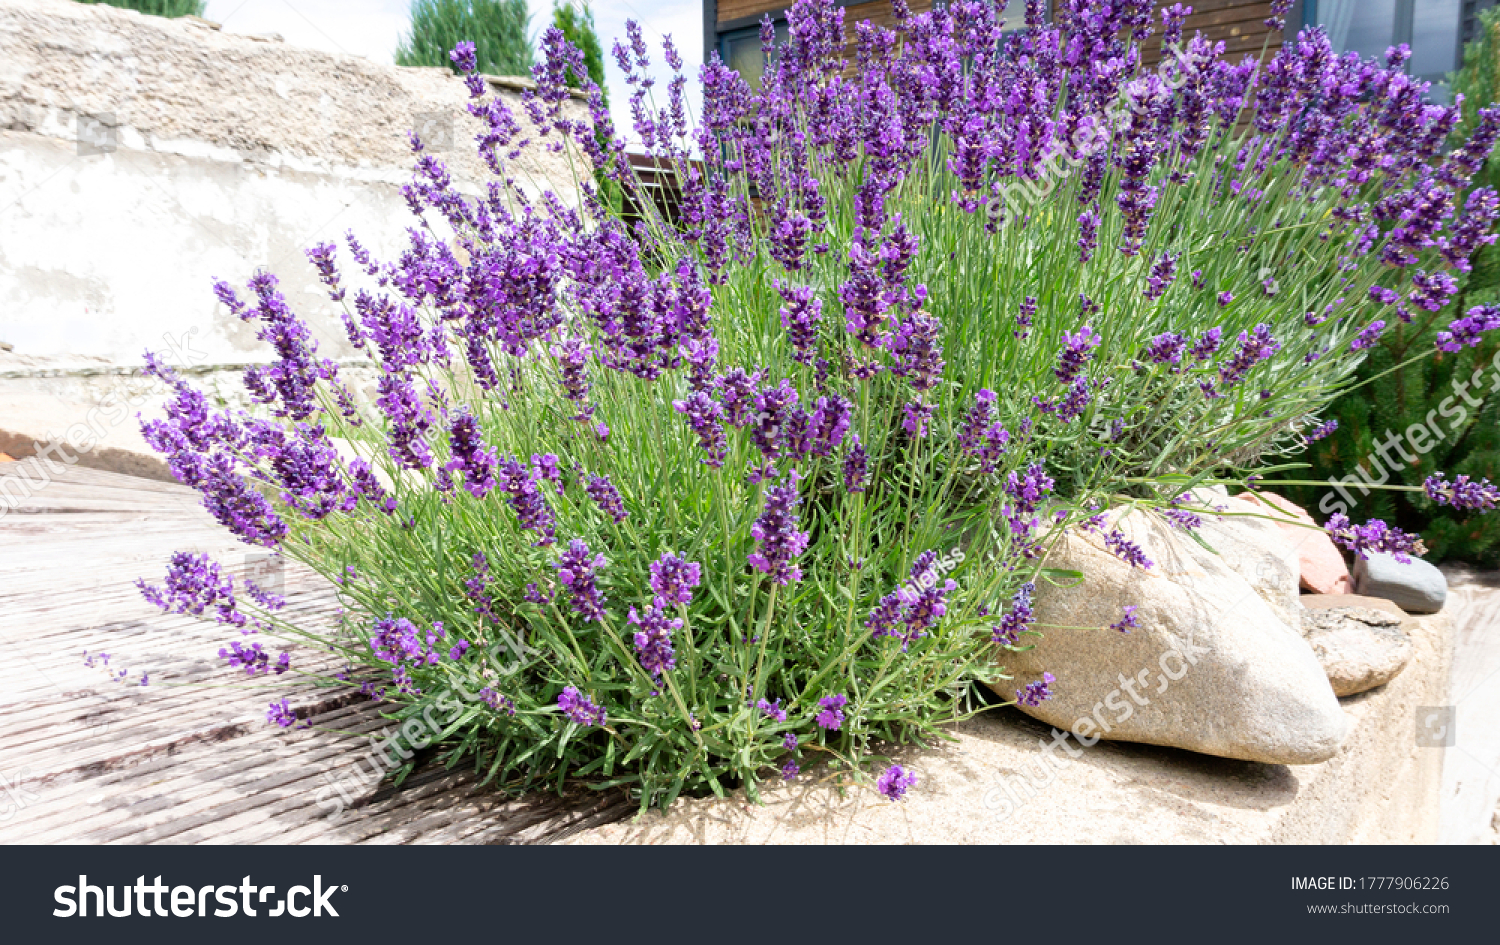 14,14 Lavender plant Images, Stock Photos & Vectors  Shutterstock